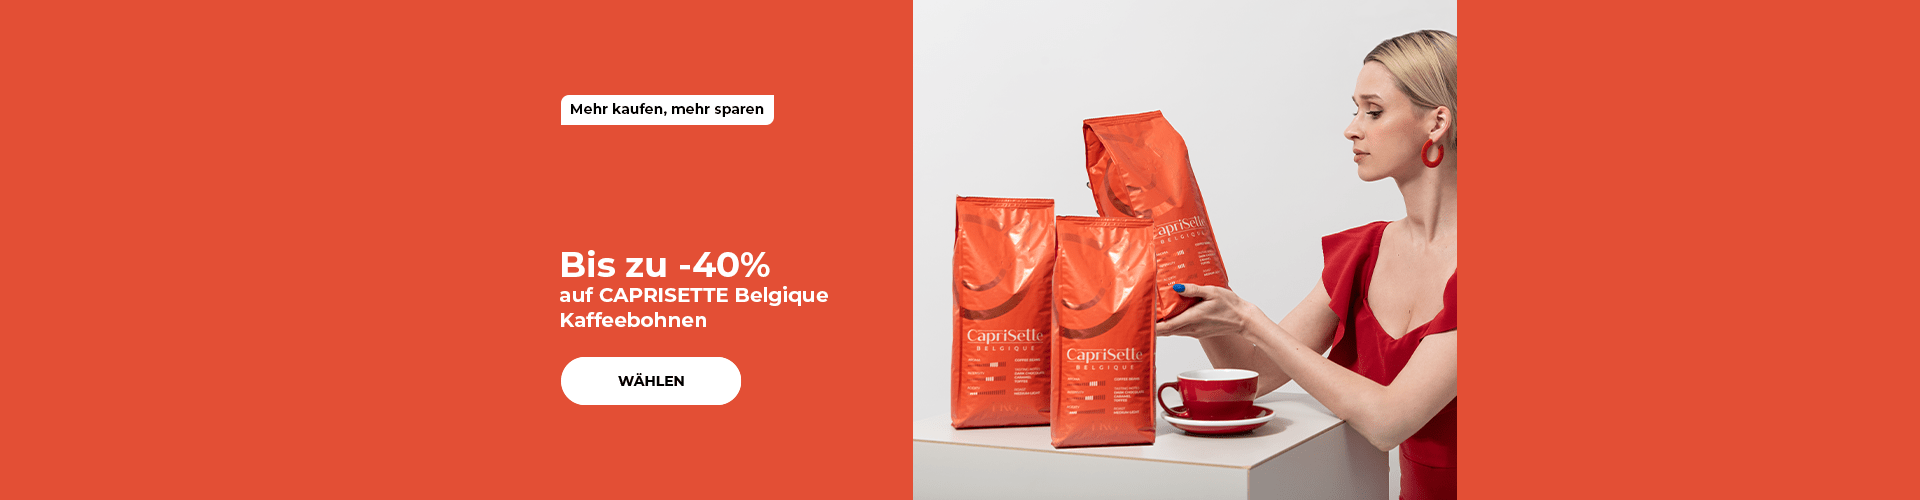 Bis zu -40% auf CAPRISETTE Belgique Kaffeebohnen